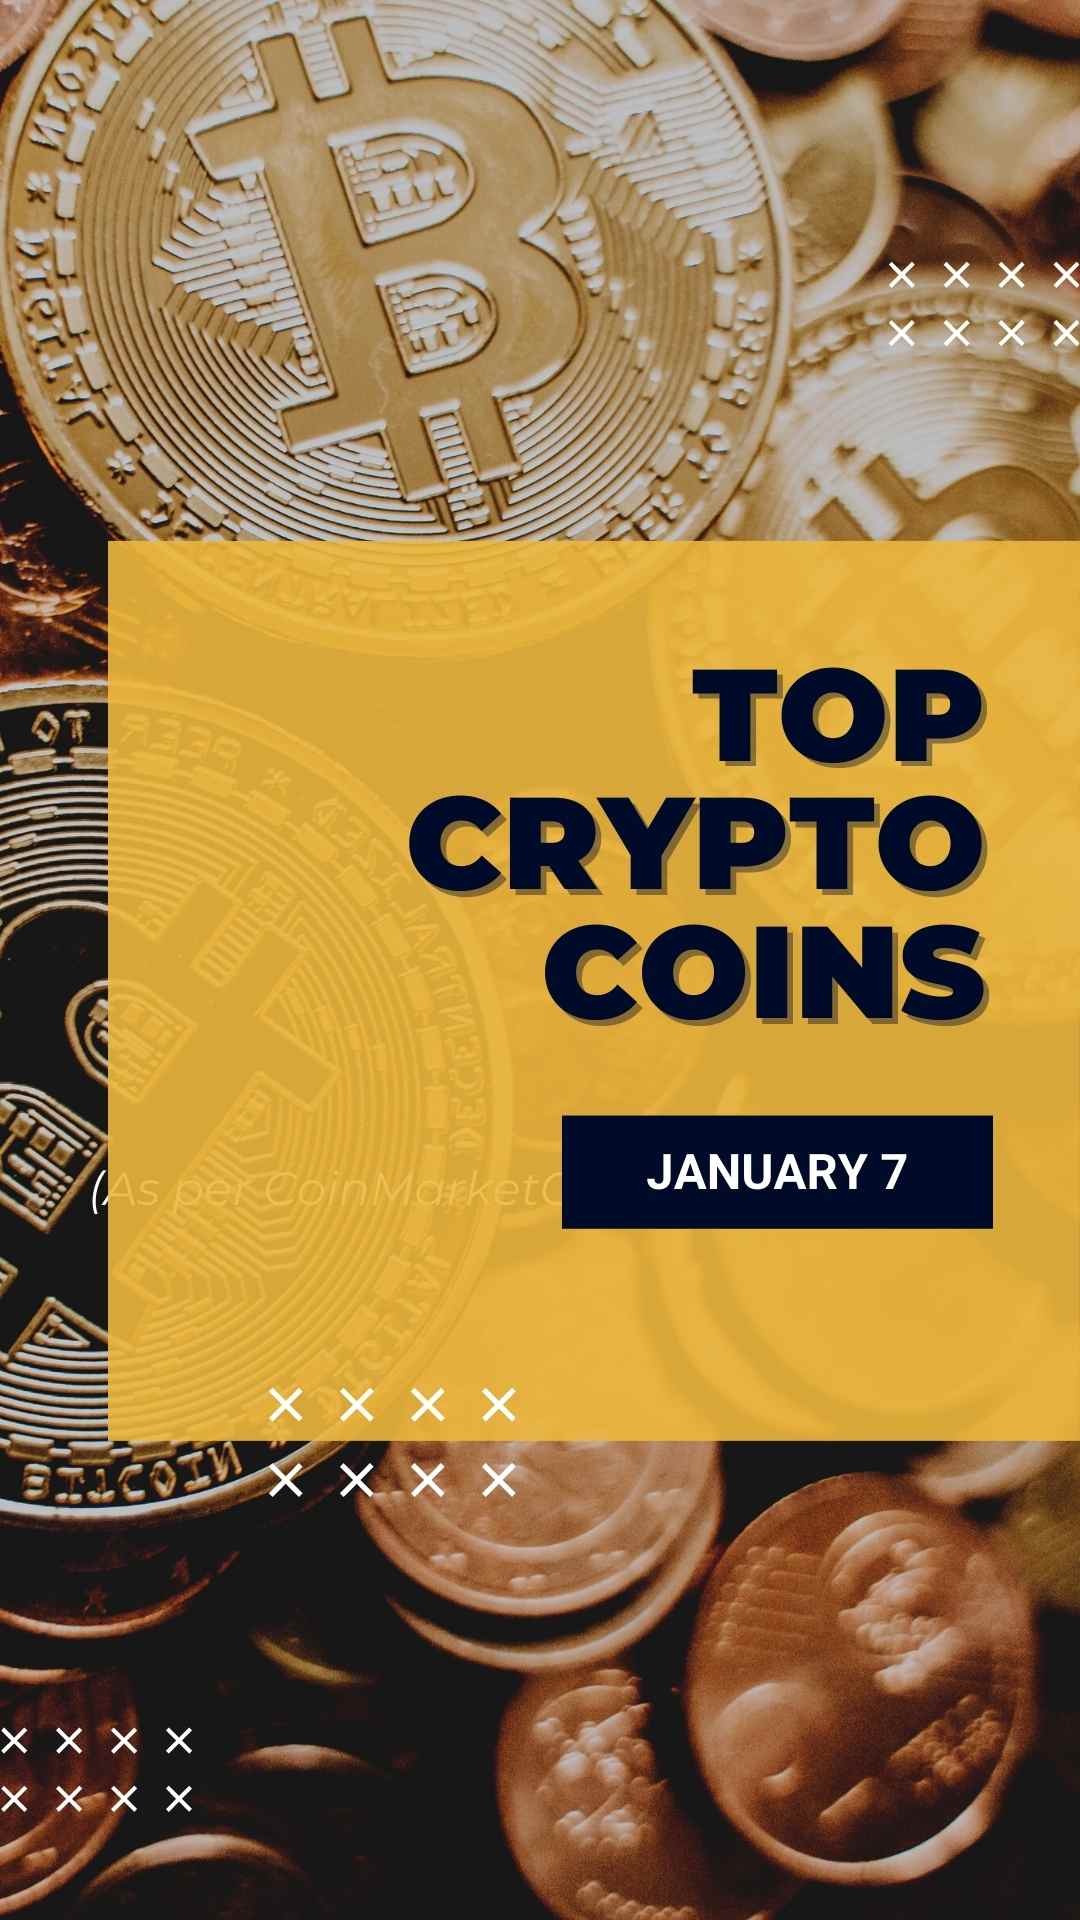 Top Crypto Coin Prices